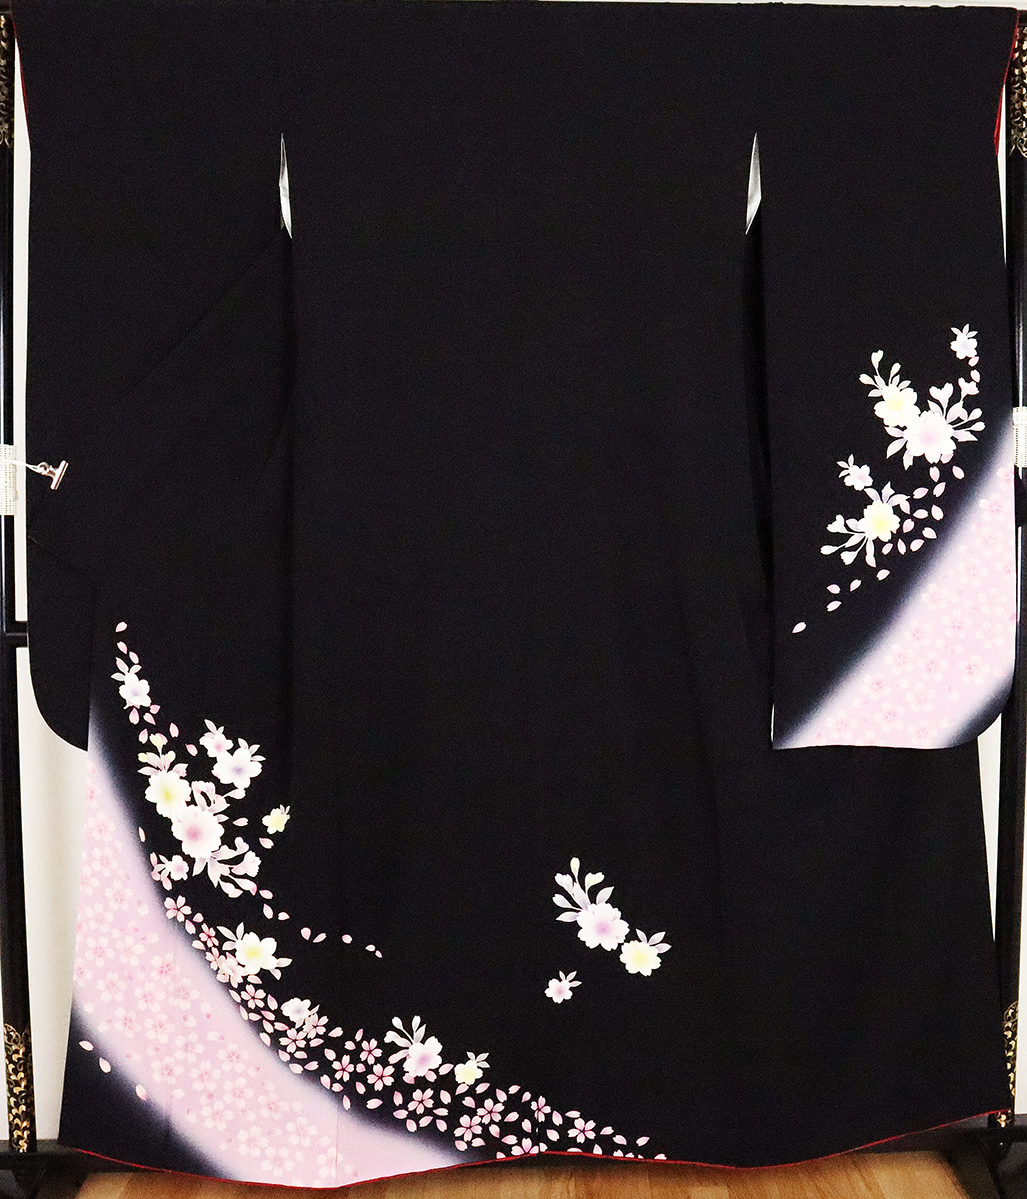 振袖 正絹 黒 ピンク 桜 Lサイズ ki19444 美品 着物 レディース 成人式 送料無料 リサイクル 中古 振袖